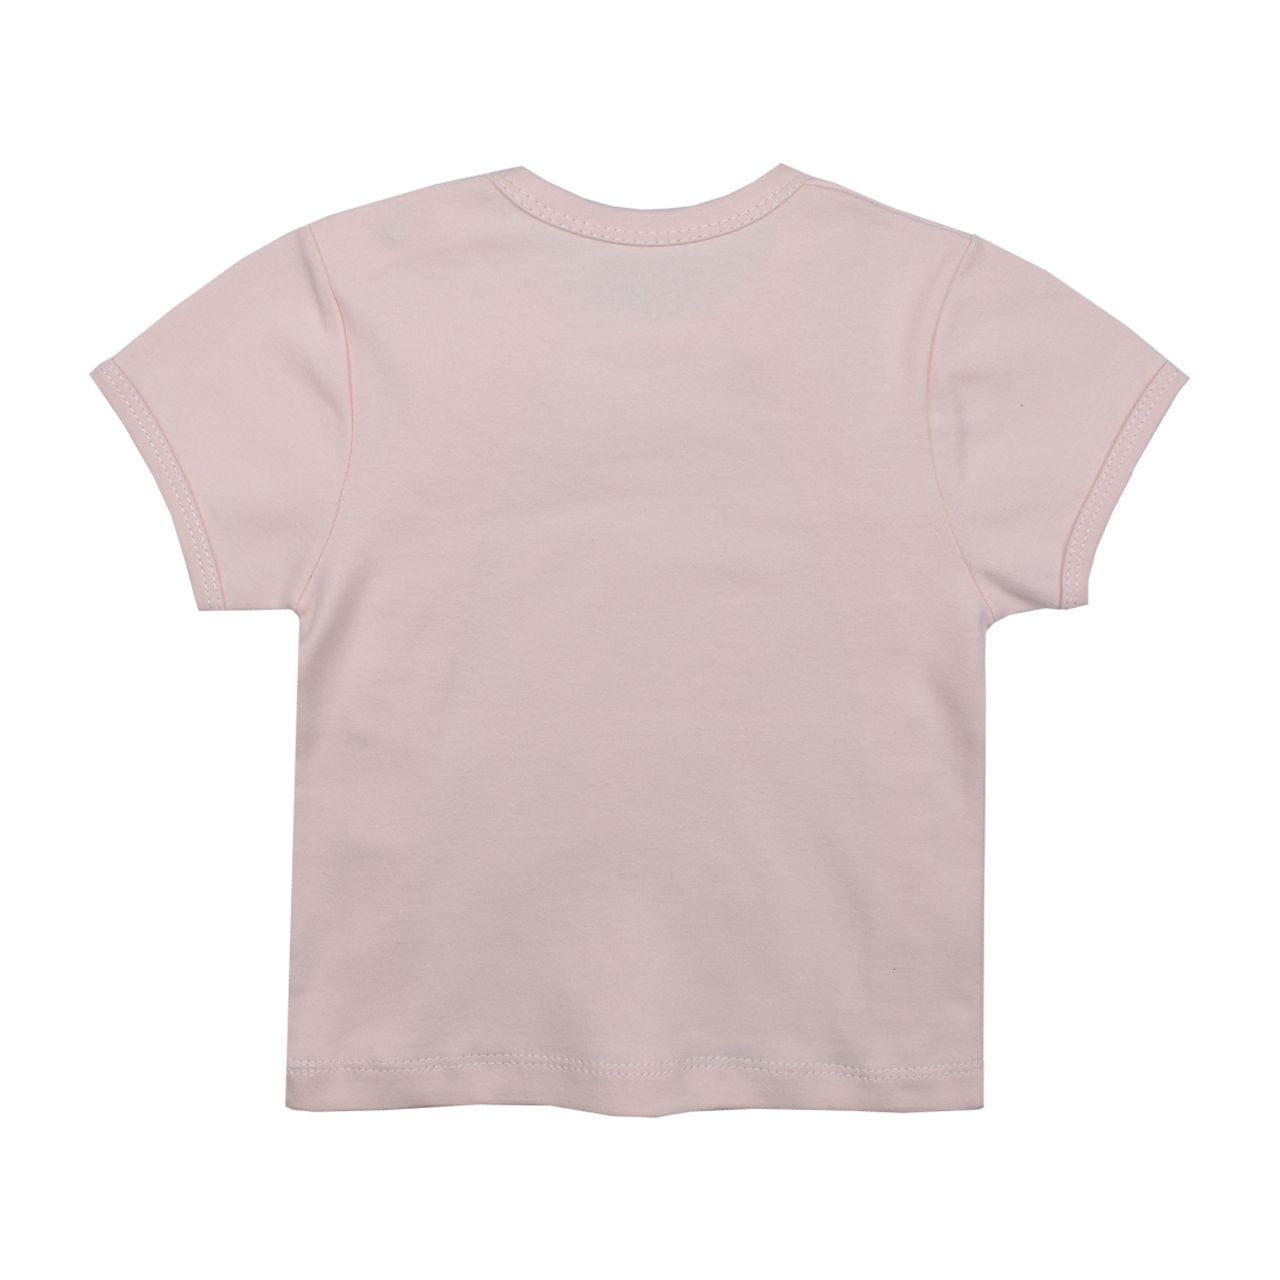 ست تی شرت و شلوار نوزادی اسپیکو مدل پارادایس کد 4 -  - 5